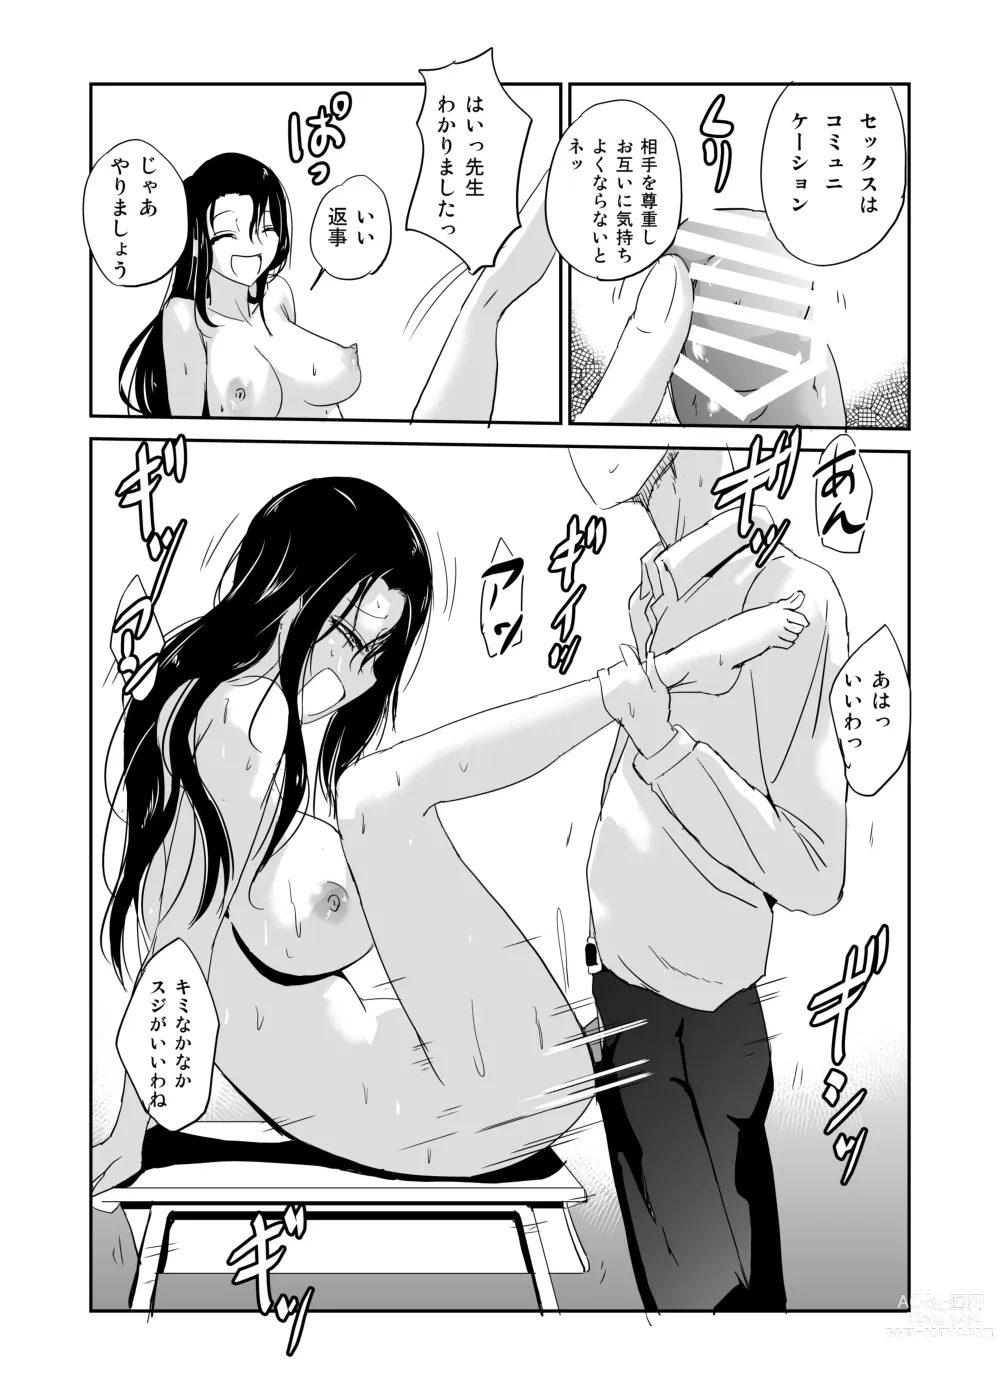 Page 5 of doujinshi Inran Onna Kyoushi  no  Doutei Sotsugyoushiki